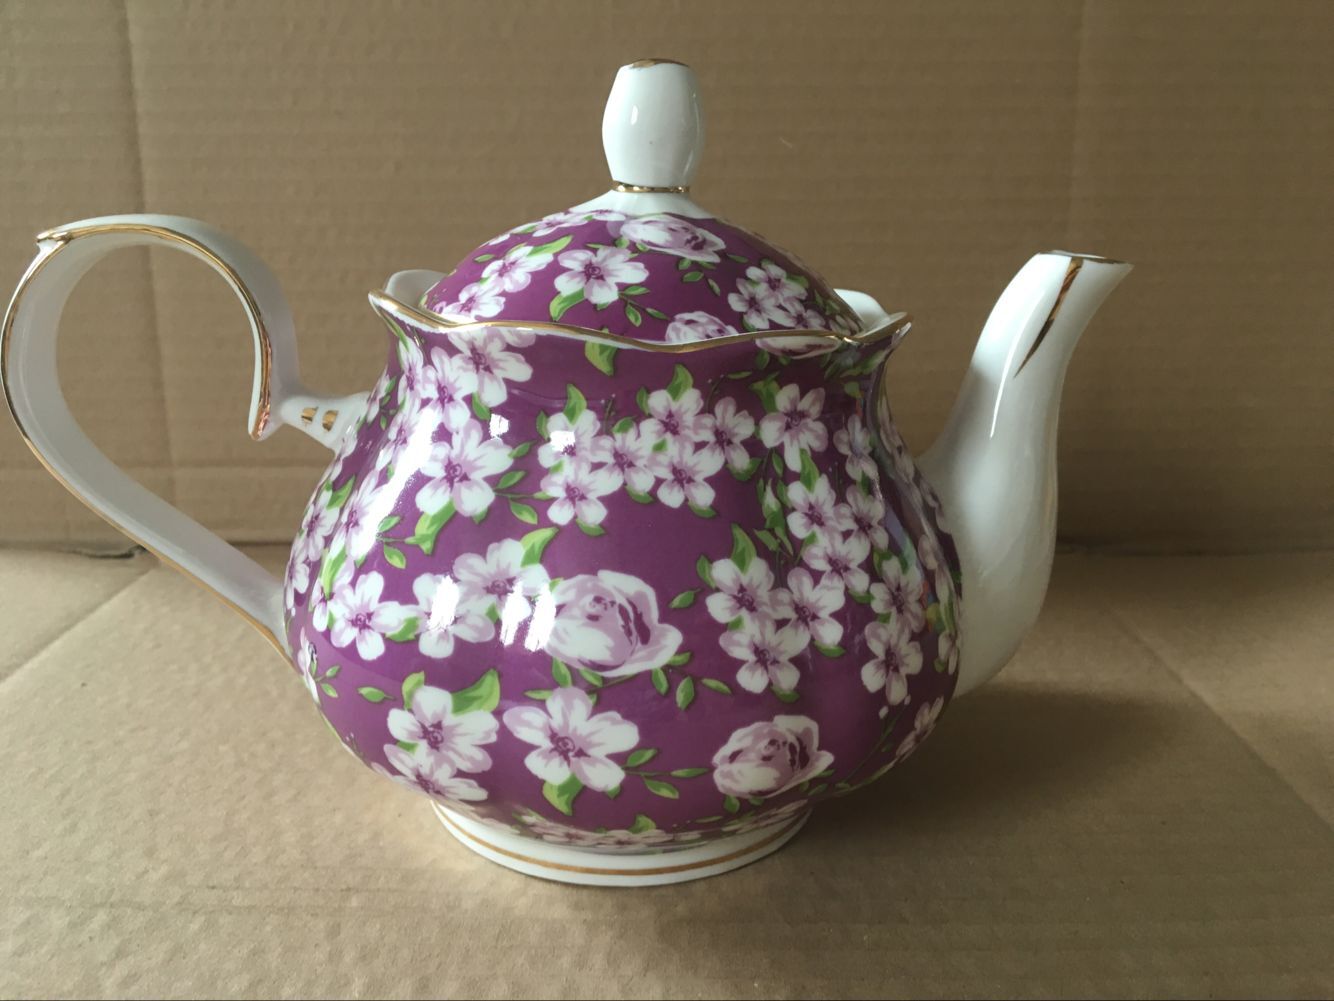 Violet Meadow 4 cup teapot